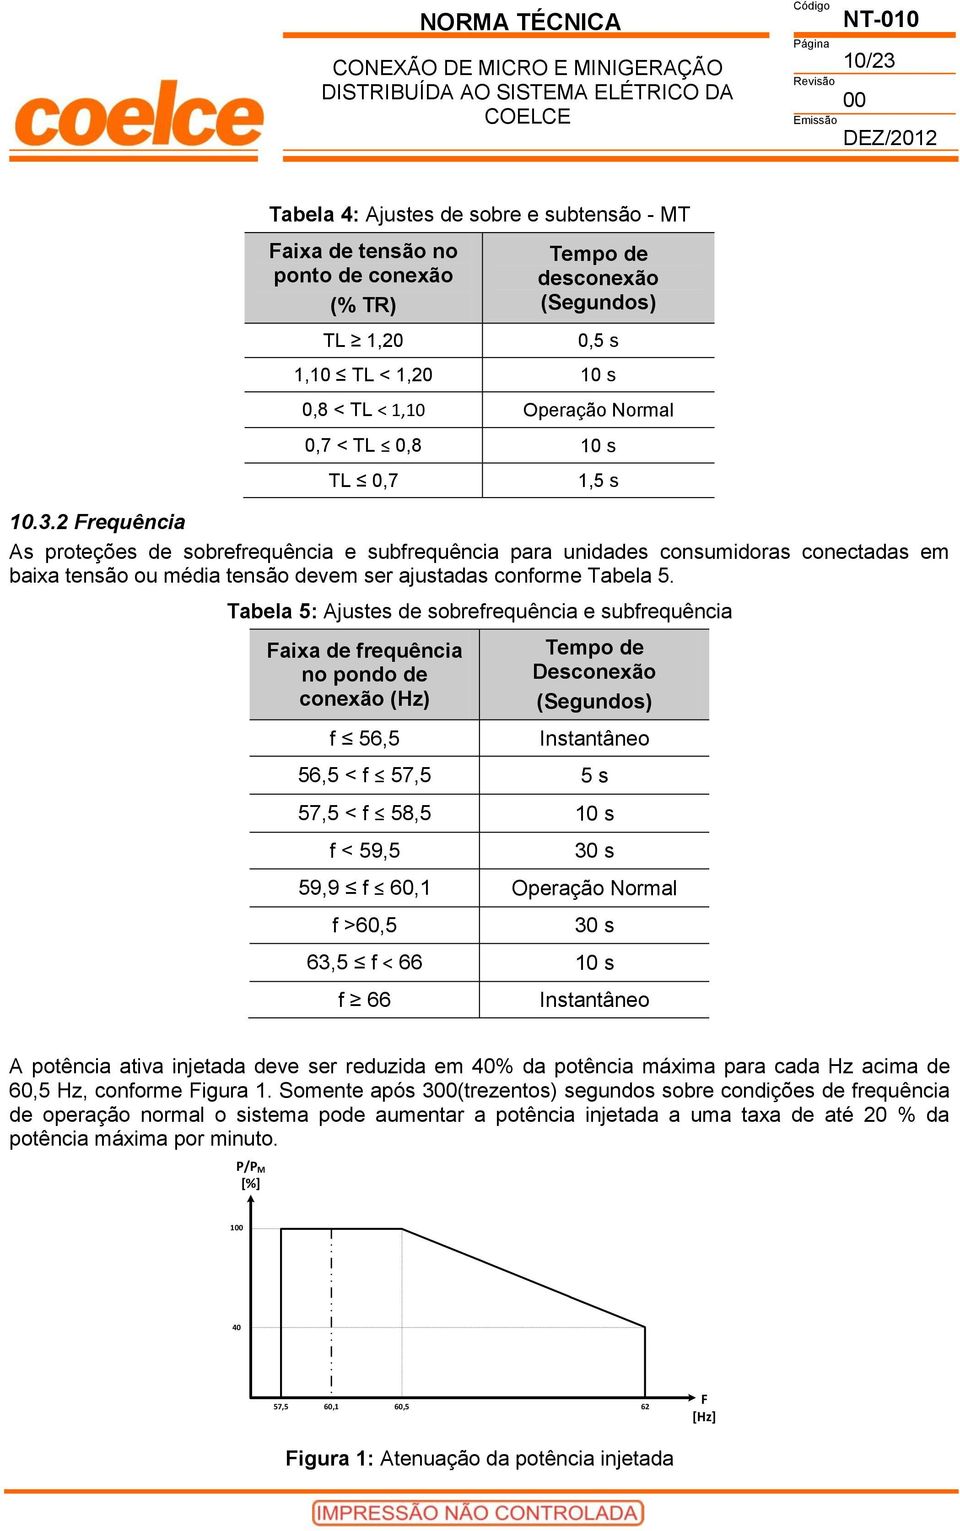 1,5 s Tabela 5: Ajustes de sobrefrequência e subfrequência Faixa de frequência no pondo de conexão (Hz) f 56,5 Tempo de Desconexão (Segundos) Instantâneo 56,5 < f 57,5 5 s 57,5 < f 58,5 10 s f < 59,5